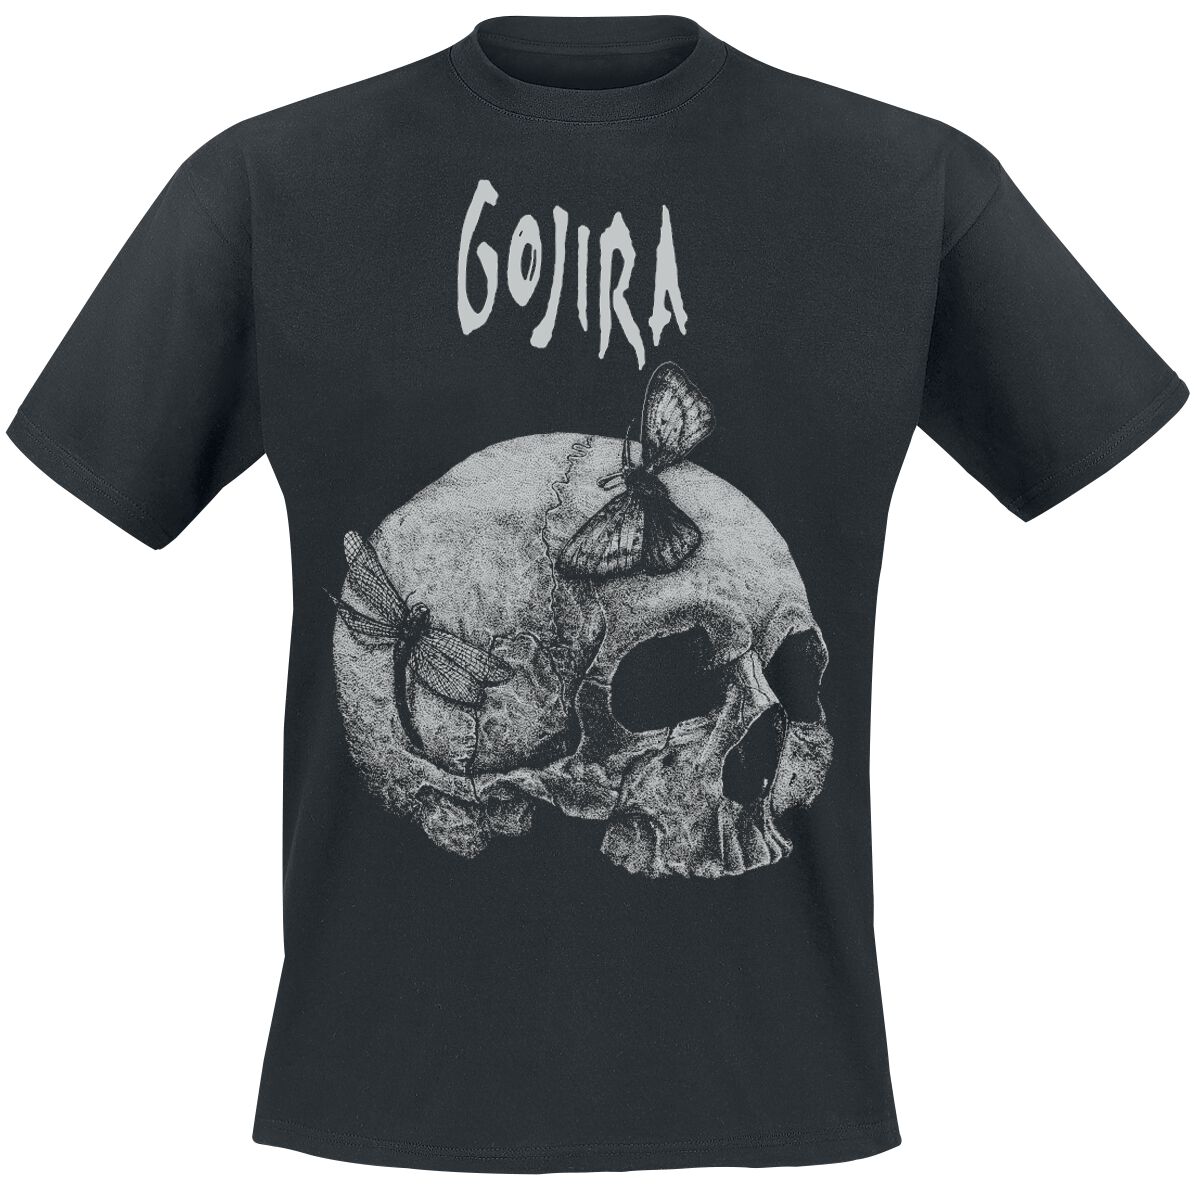 Gojira T-Shirt - Moth Skull - S bis XXL - für Männer - Größe L - schwarz  - Lizenziertes Merchandise!